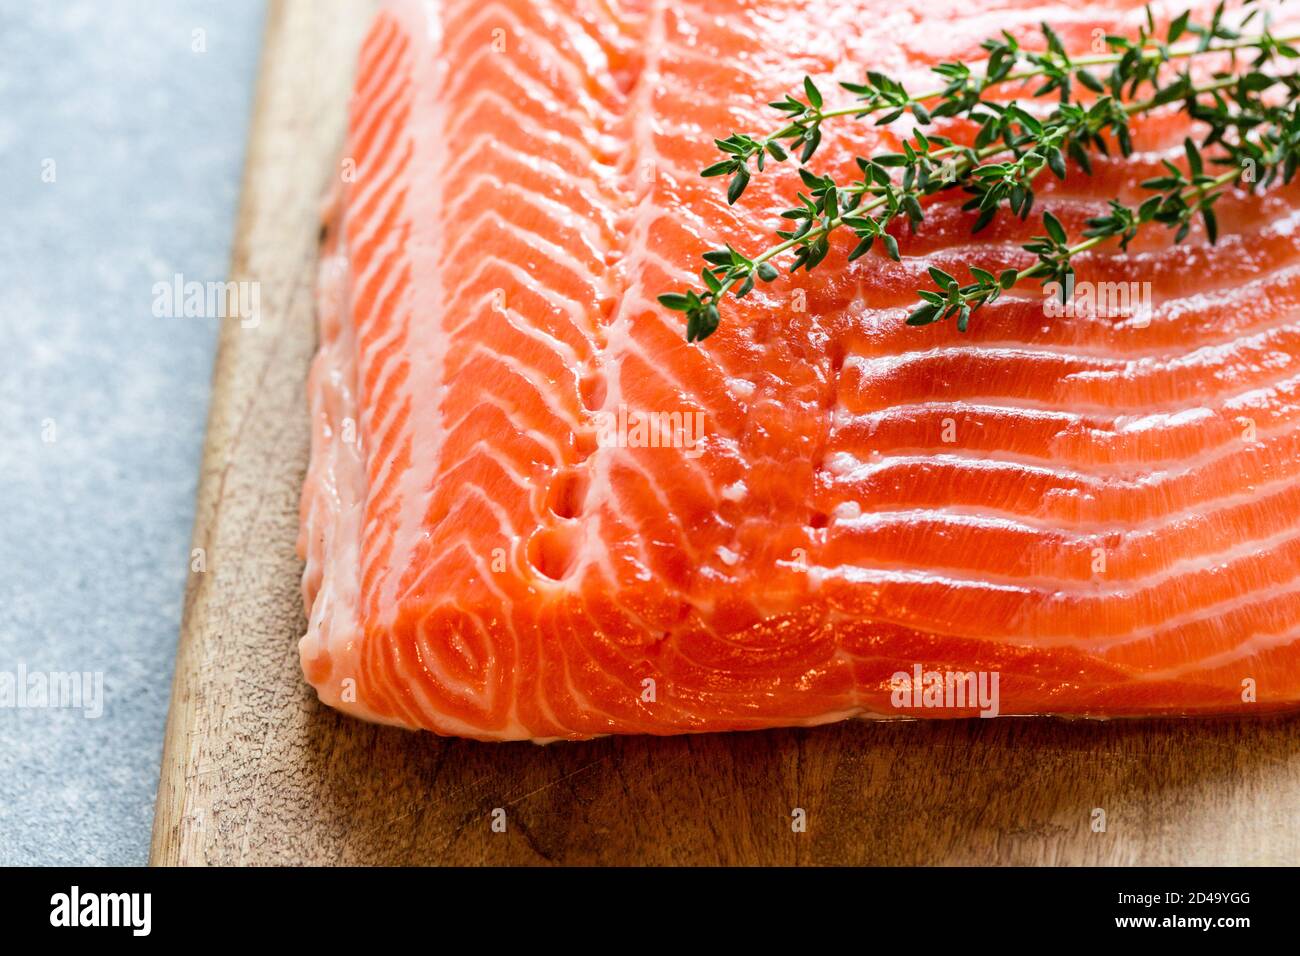 Salmón. Filete de salmón crudo fresco con ingredientes de cocina, hierbas y limón. Primer plano. Comida sana, dieta o concepto de cocina Foto de stock